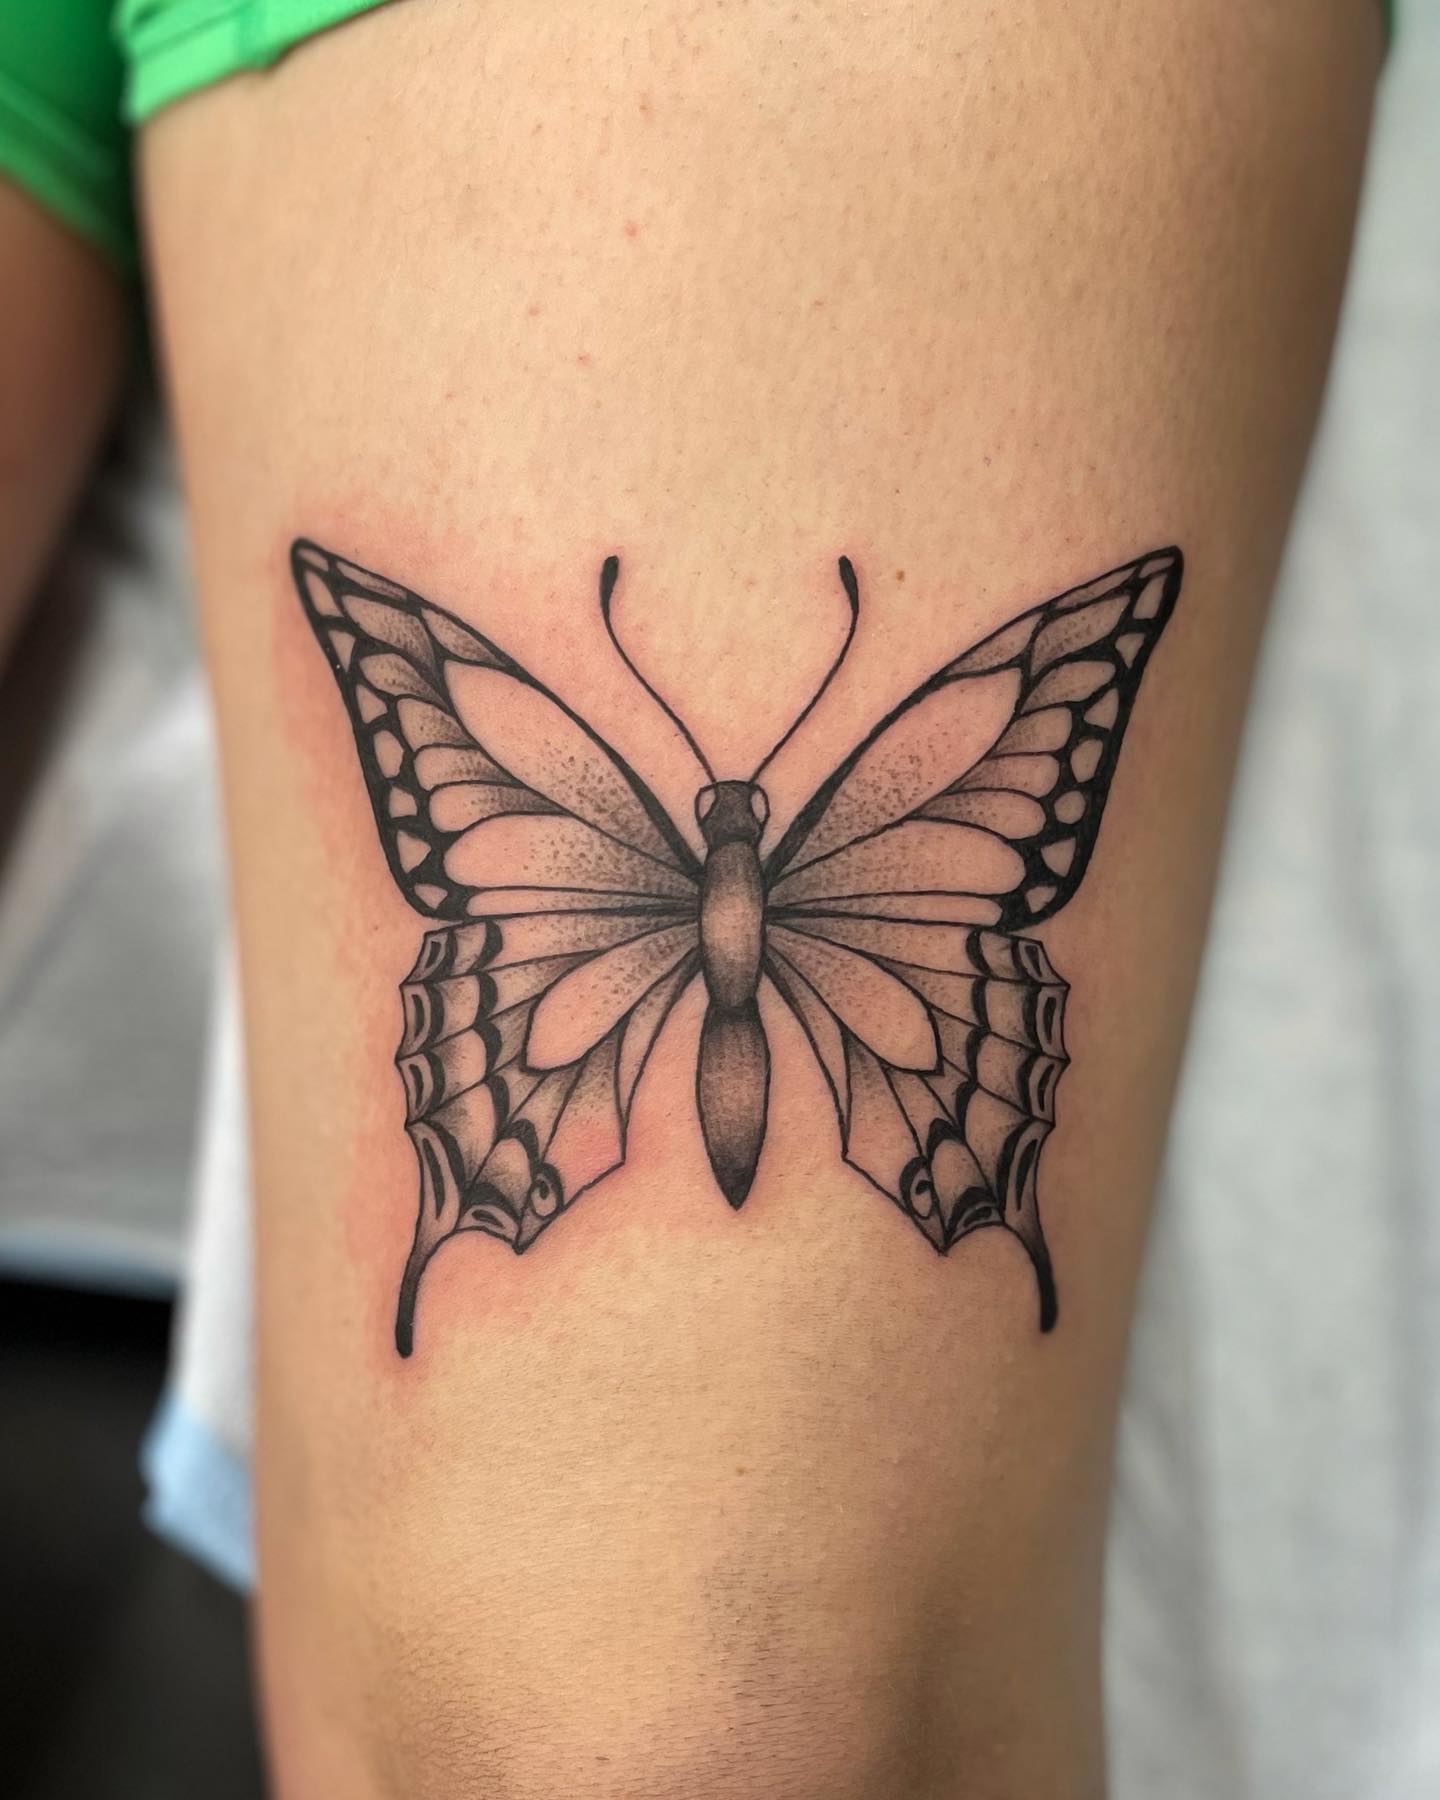 Tatuaje de mariposa encima de la rodilla